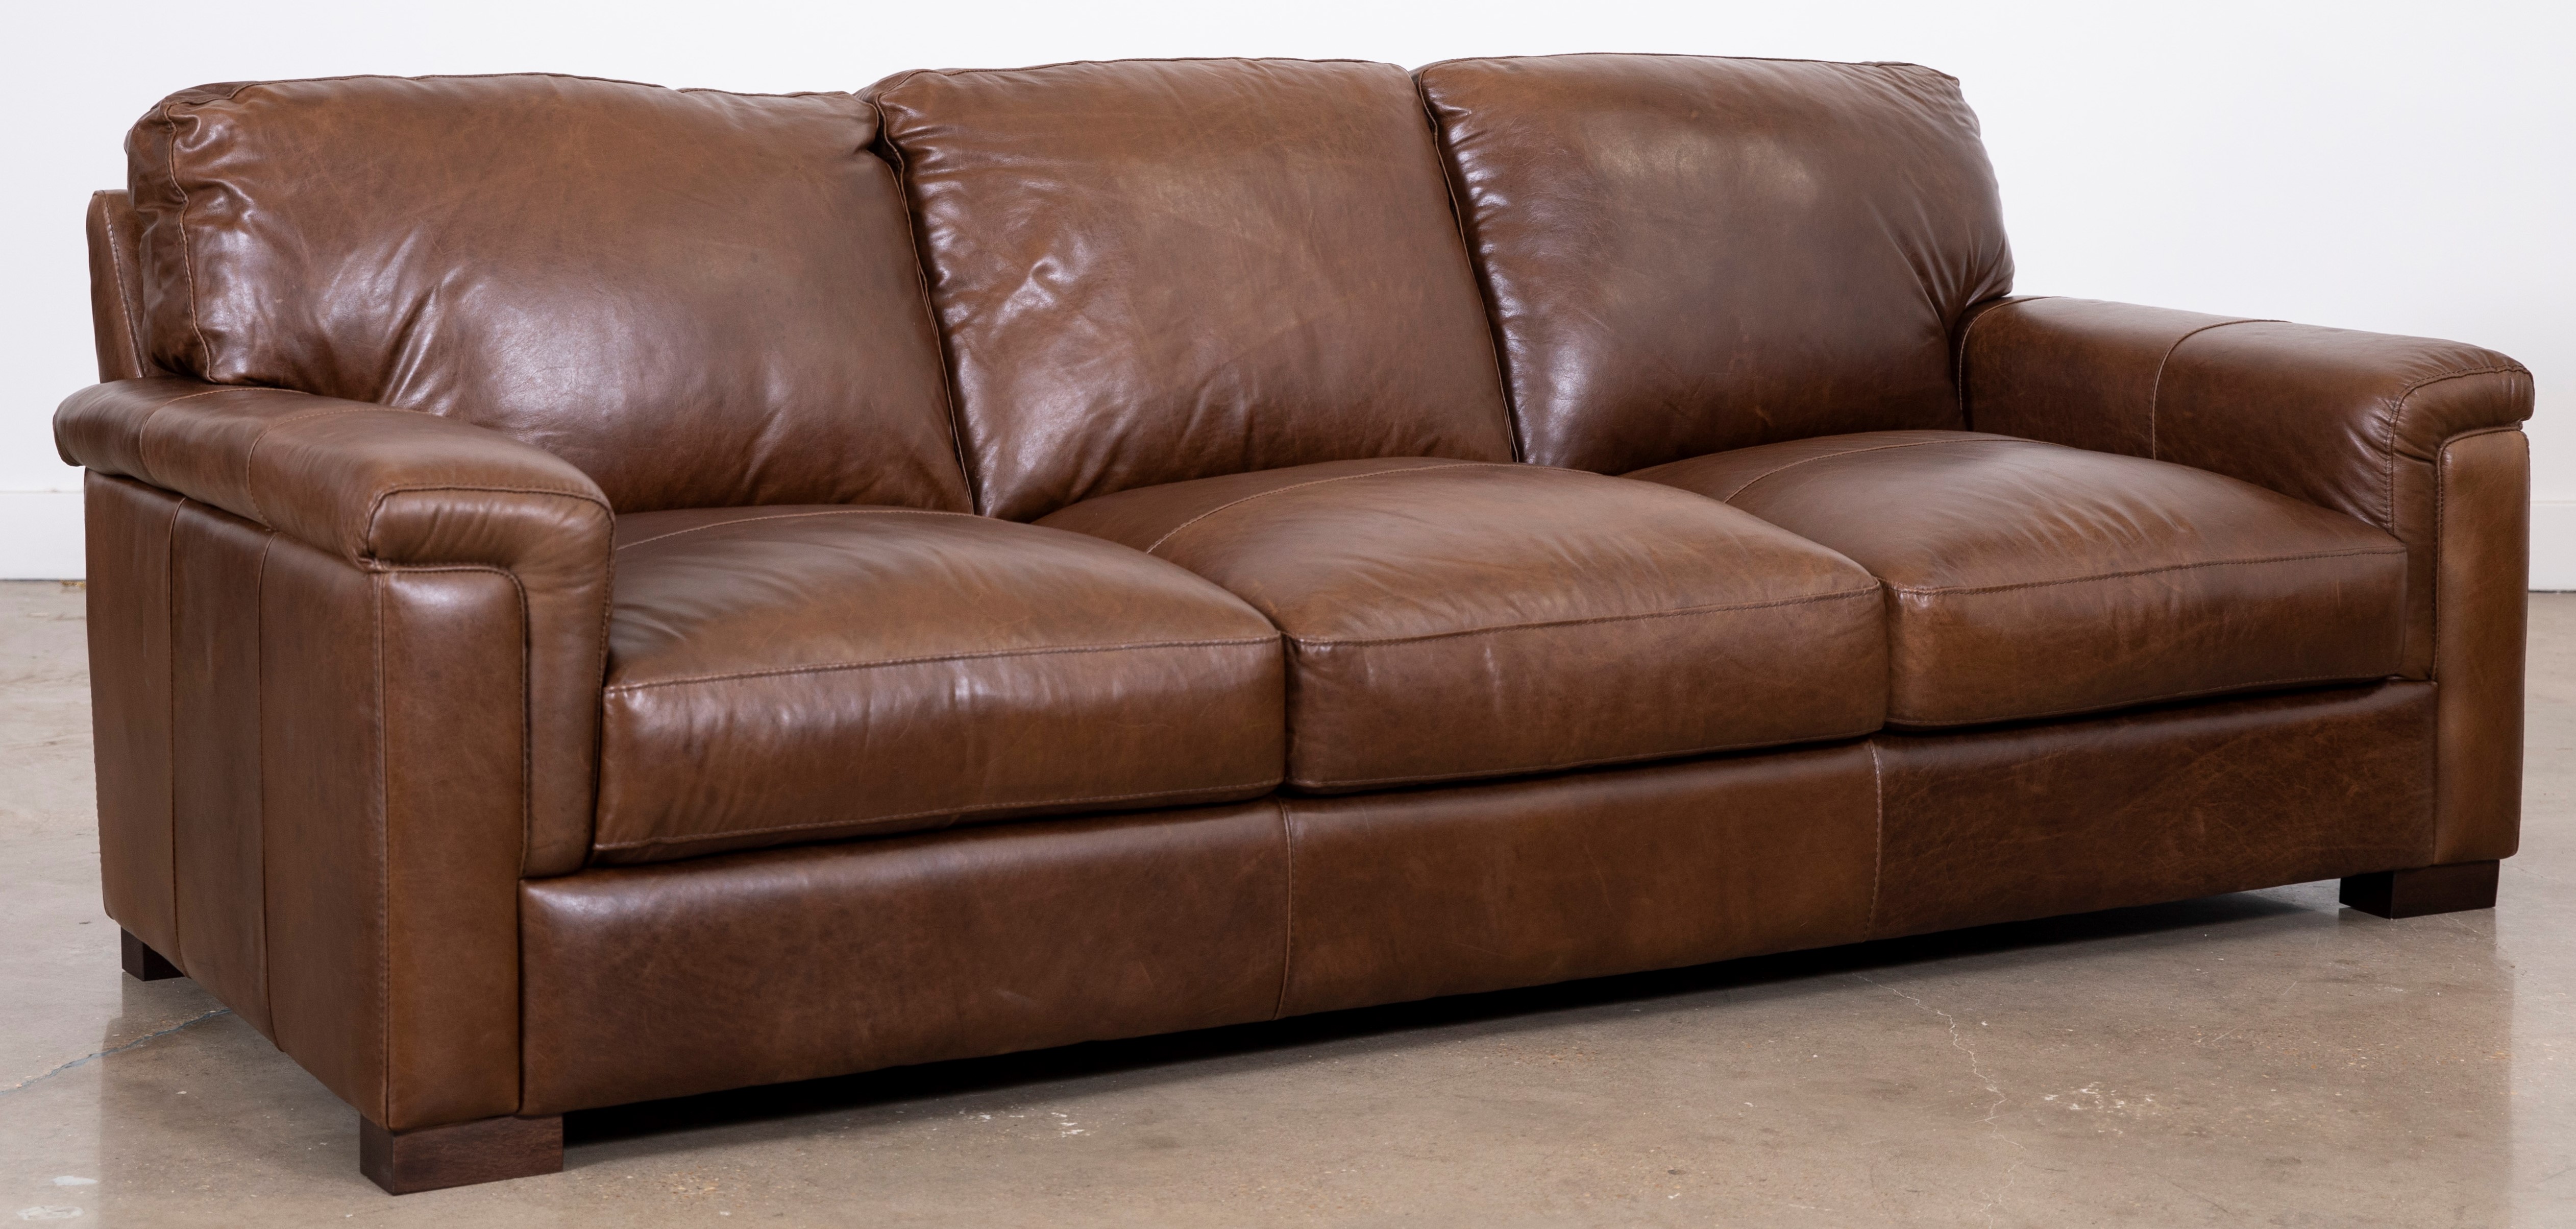 dallas chestnut leather sofa